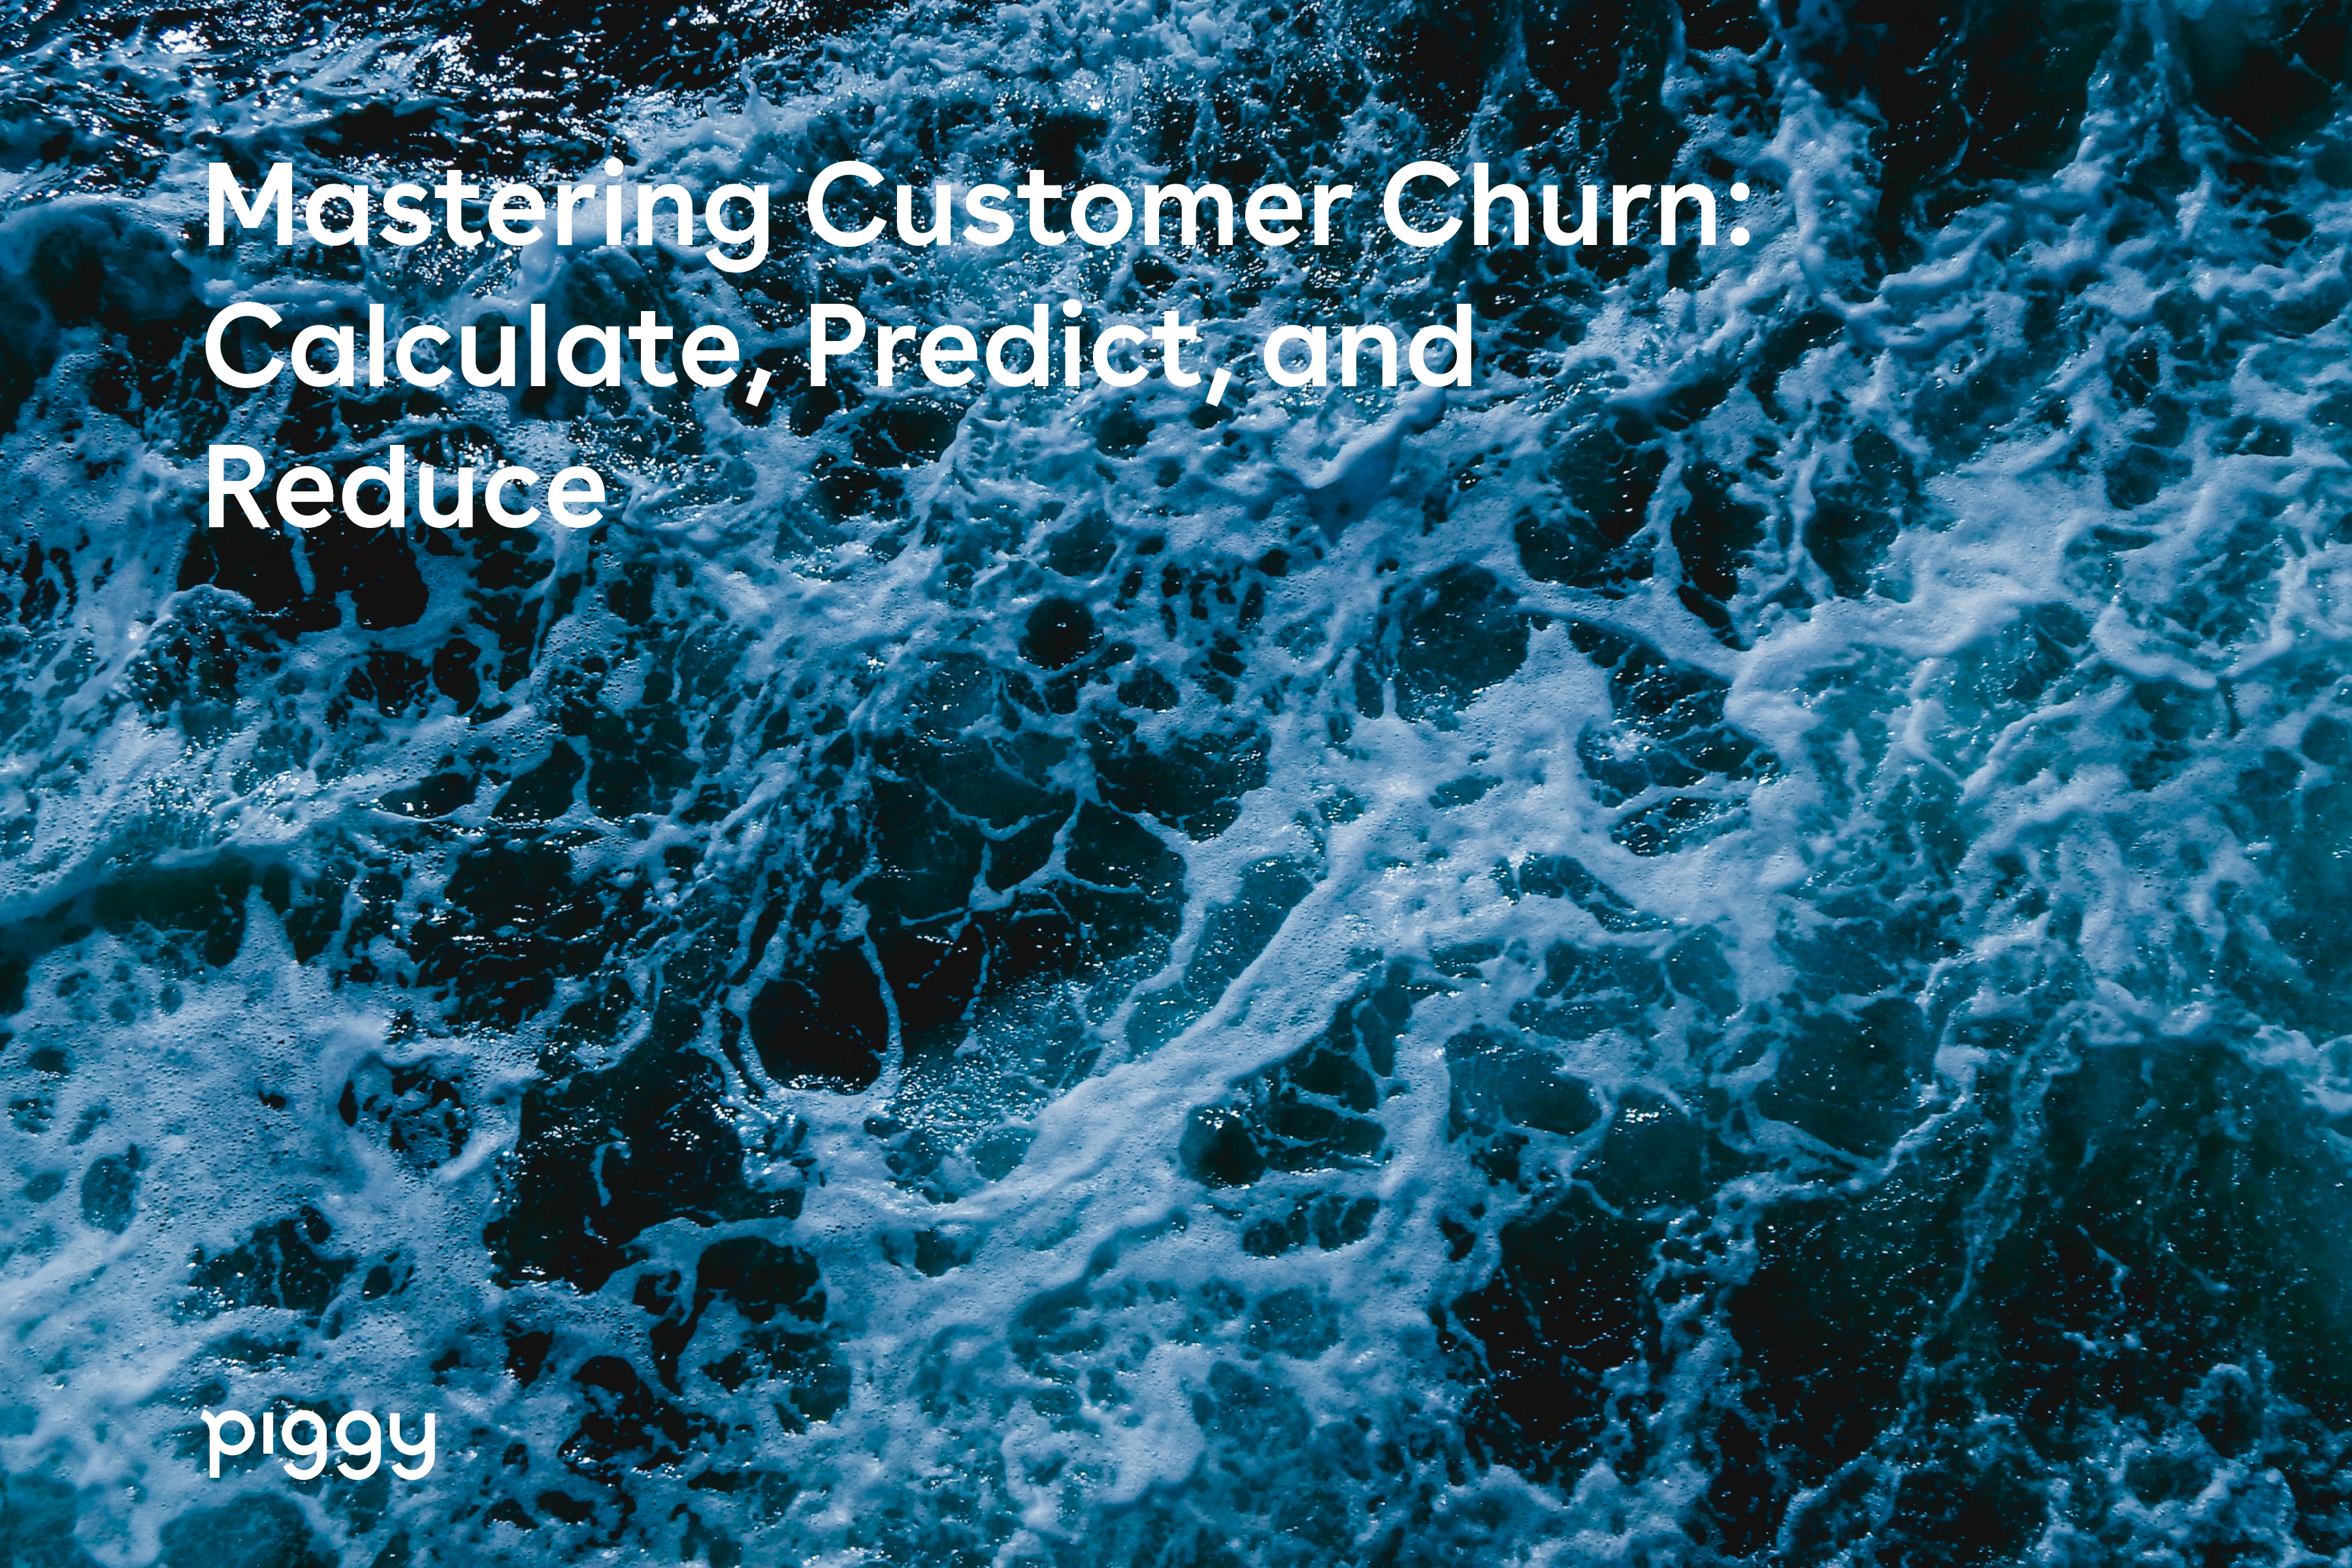 customer-churn-title